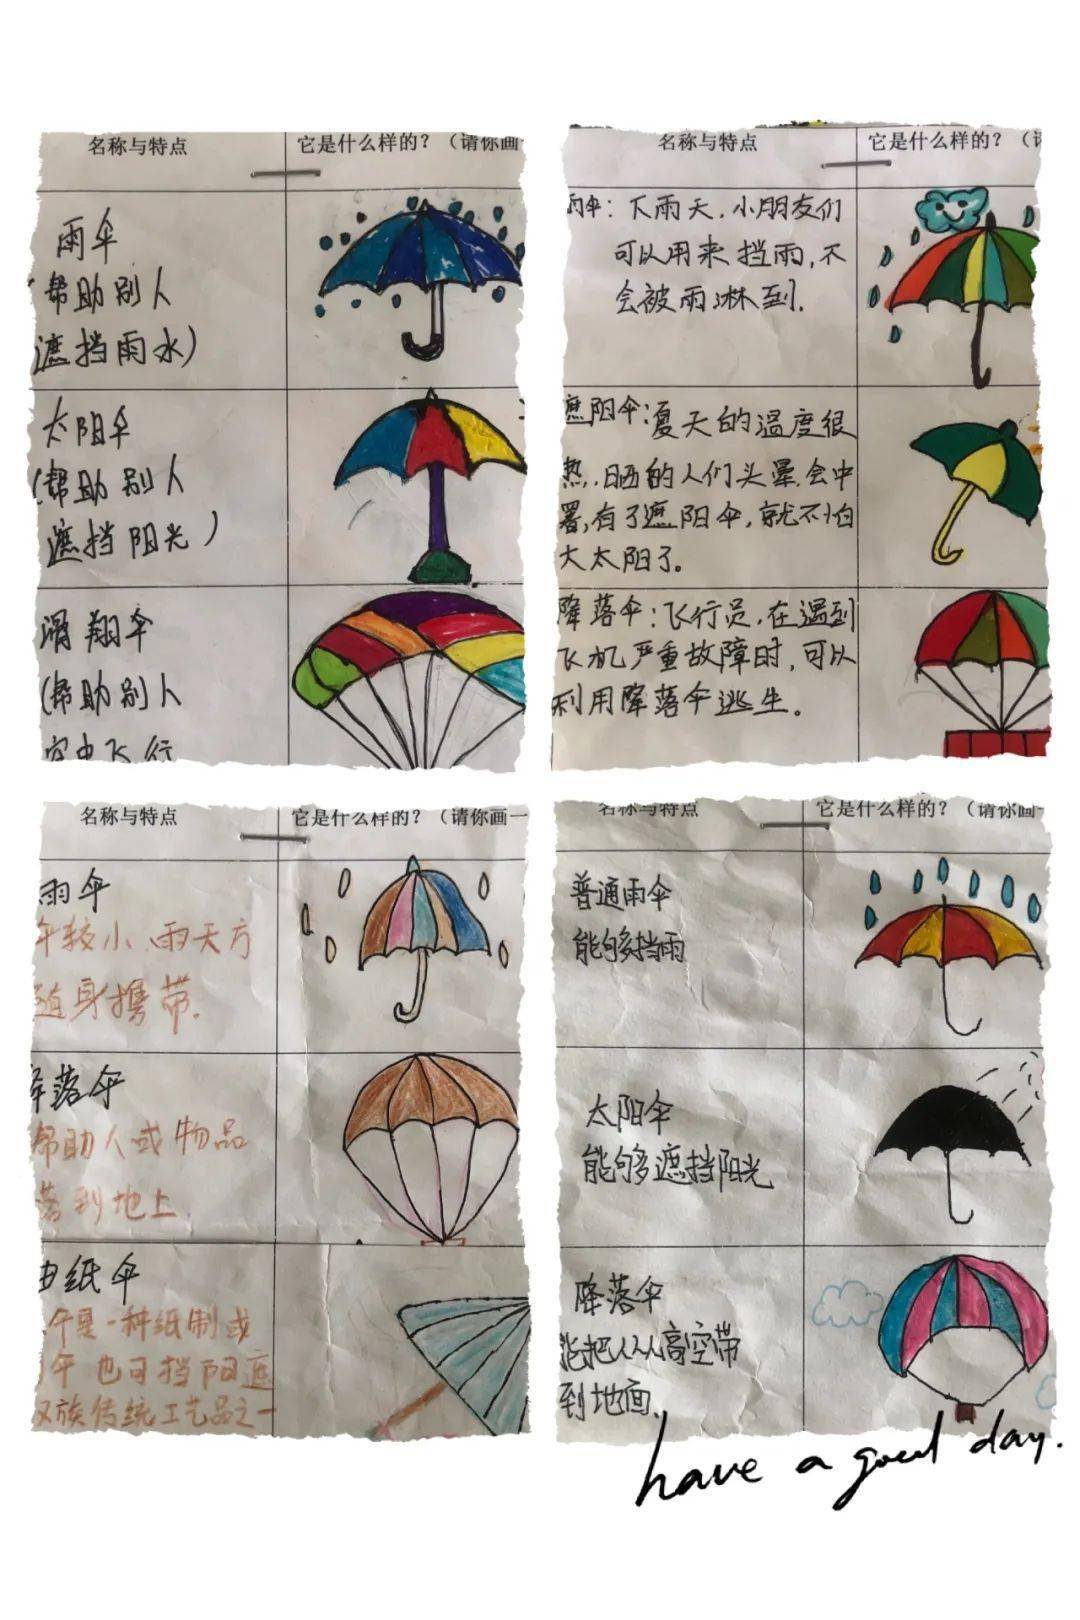 伞的调查表图片